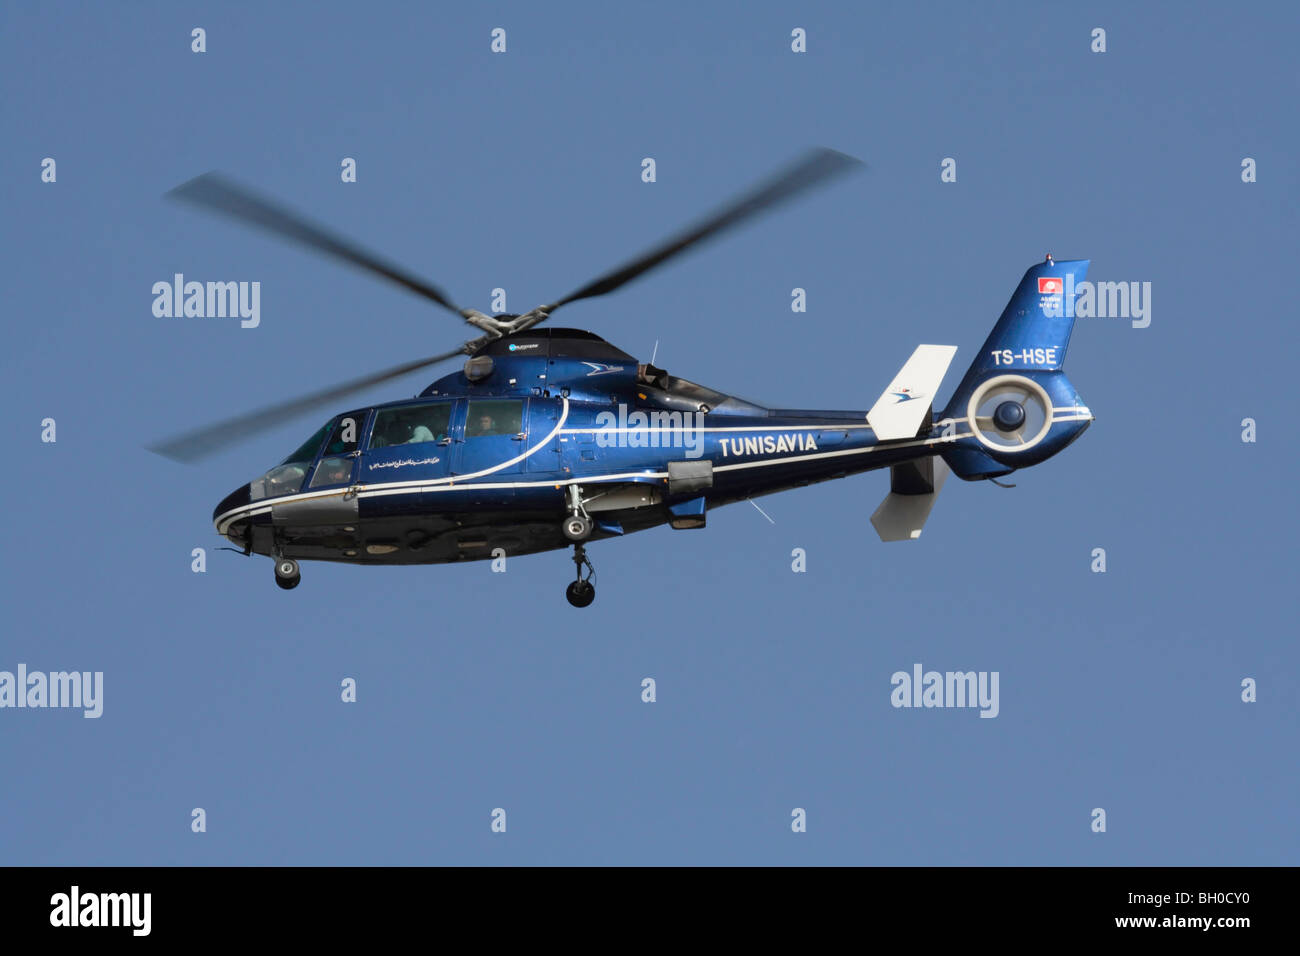 Eurocopter AS365 Dauphin hélicoptère exploité par Tunisavia Banque D'Images